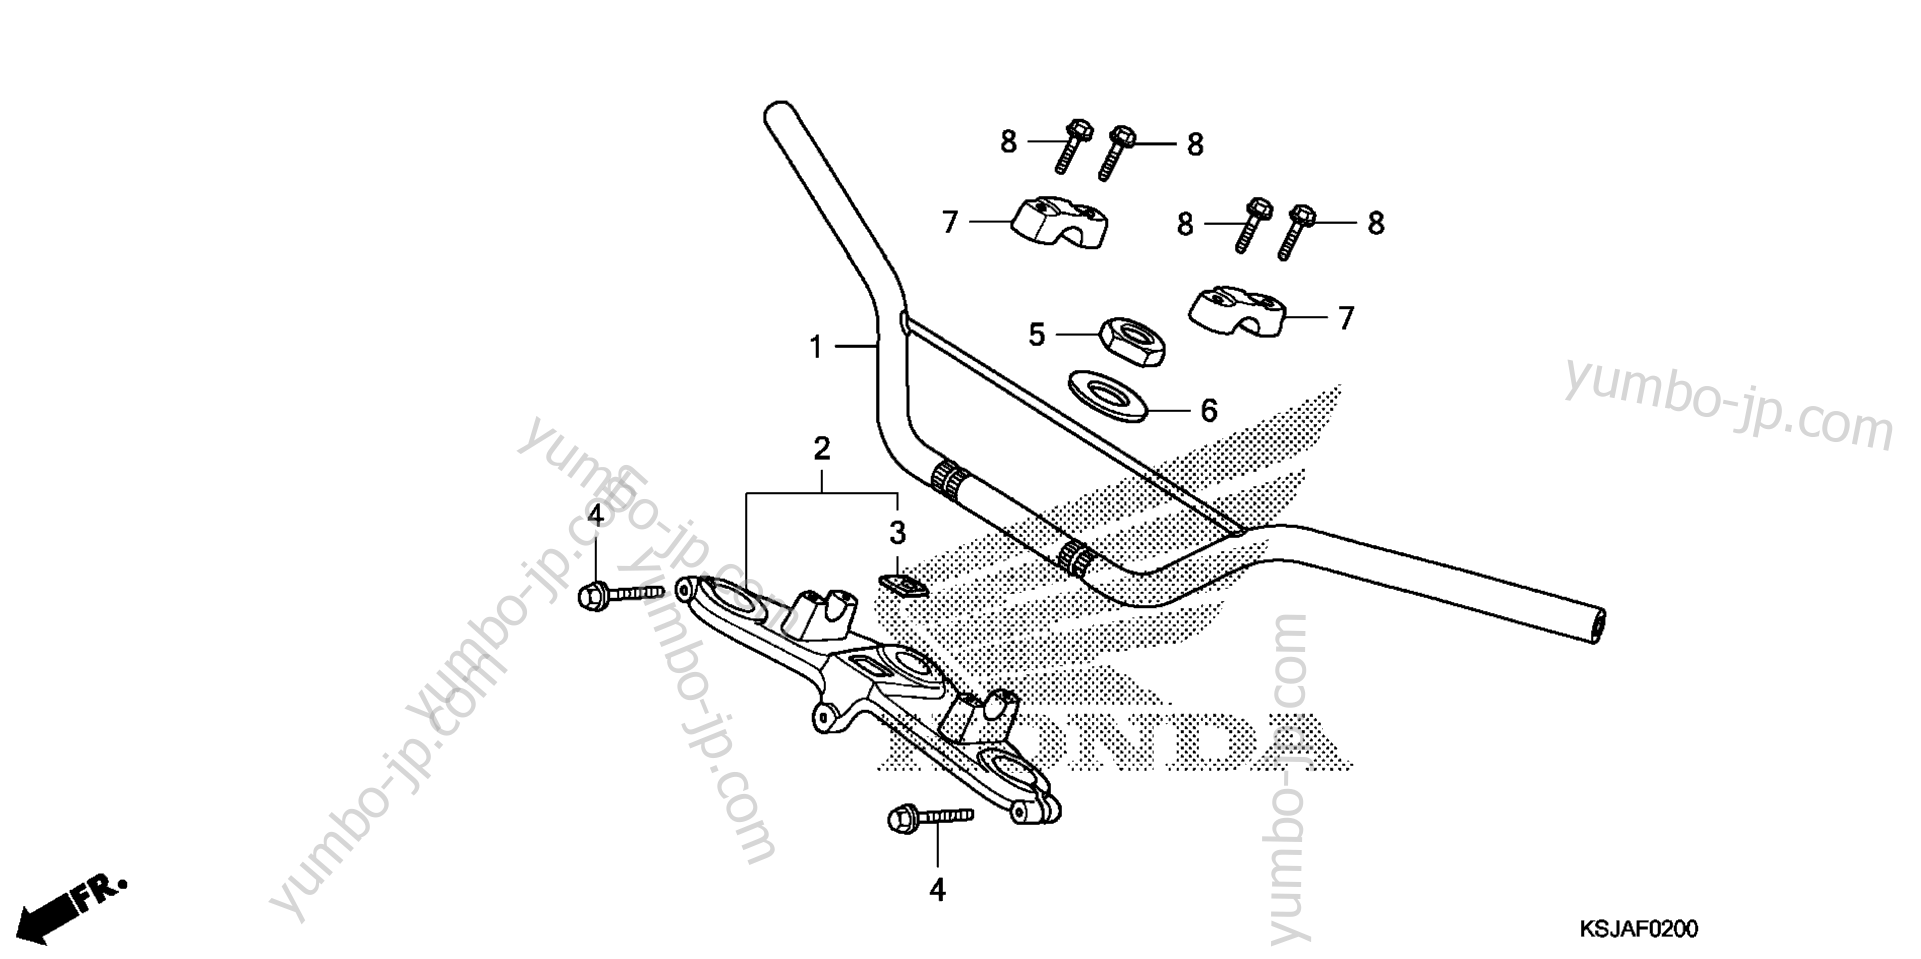 Румпель (рукоятка управления) для мотоциклов HONDA CRF80F A 2011 г.